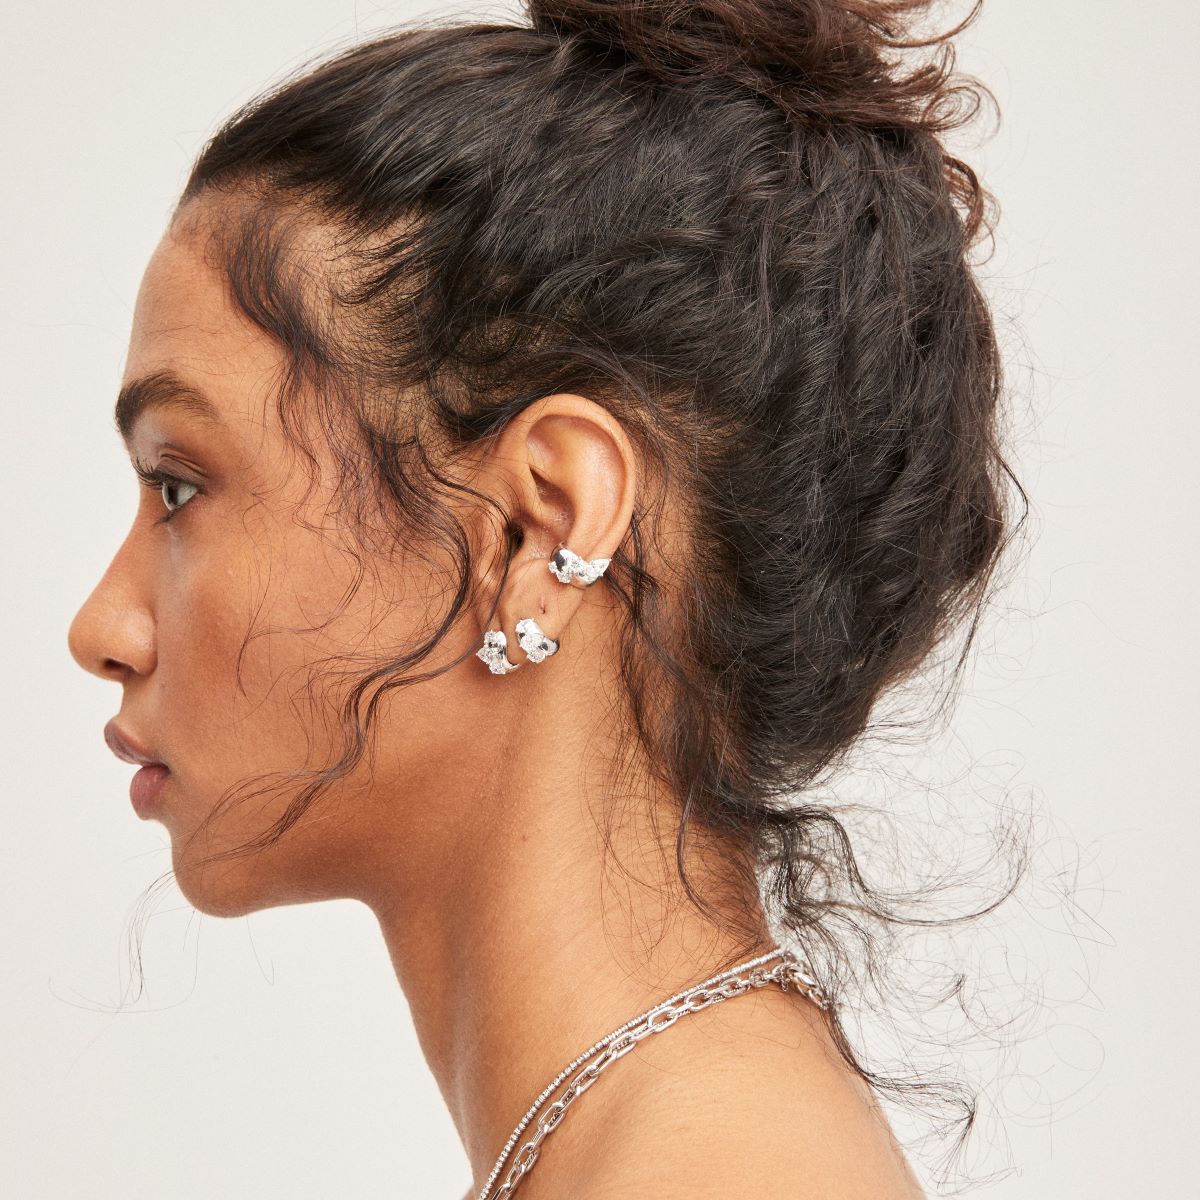 Wide Diamond Ear Cuff in Sterling Silver - Lab Grown